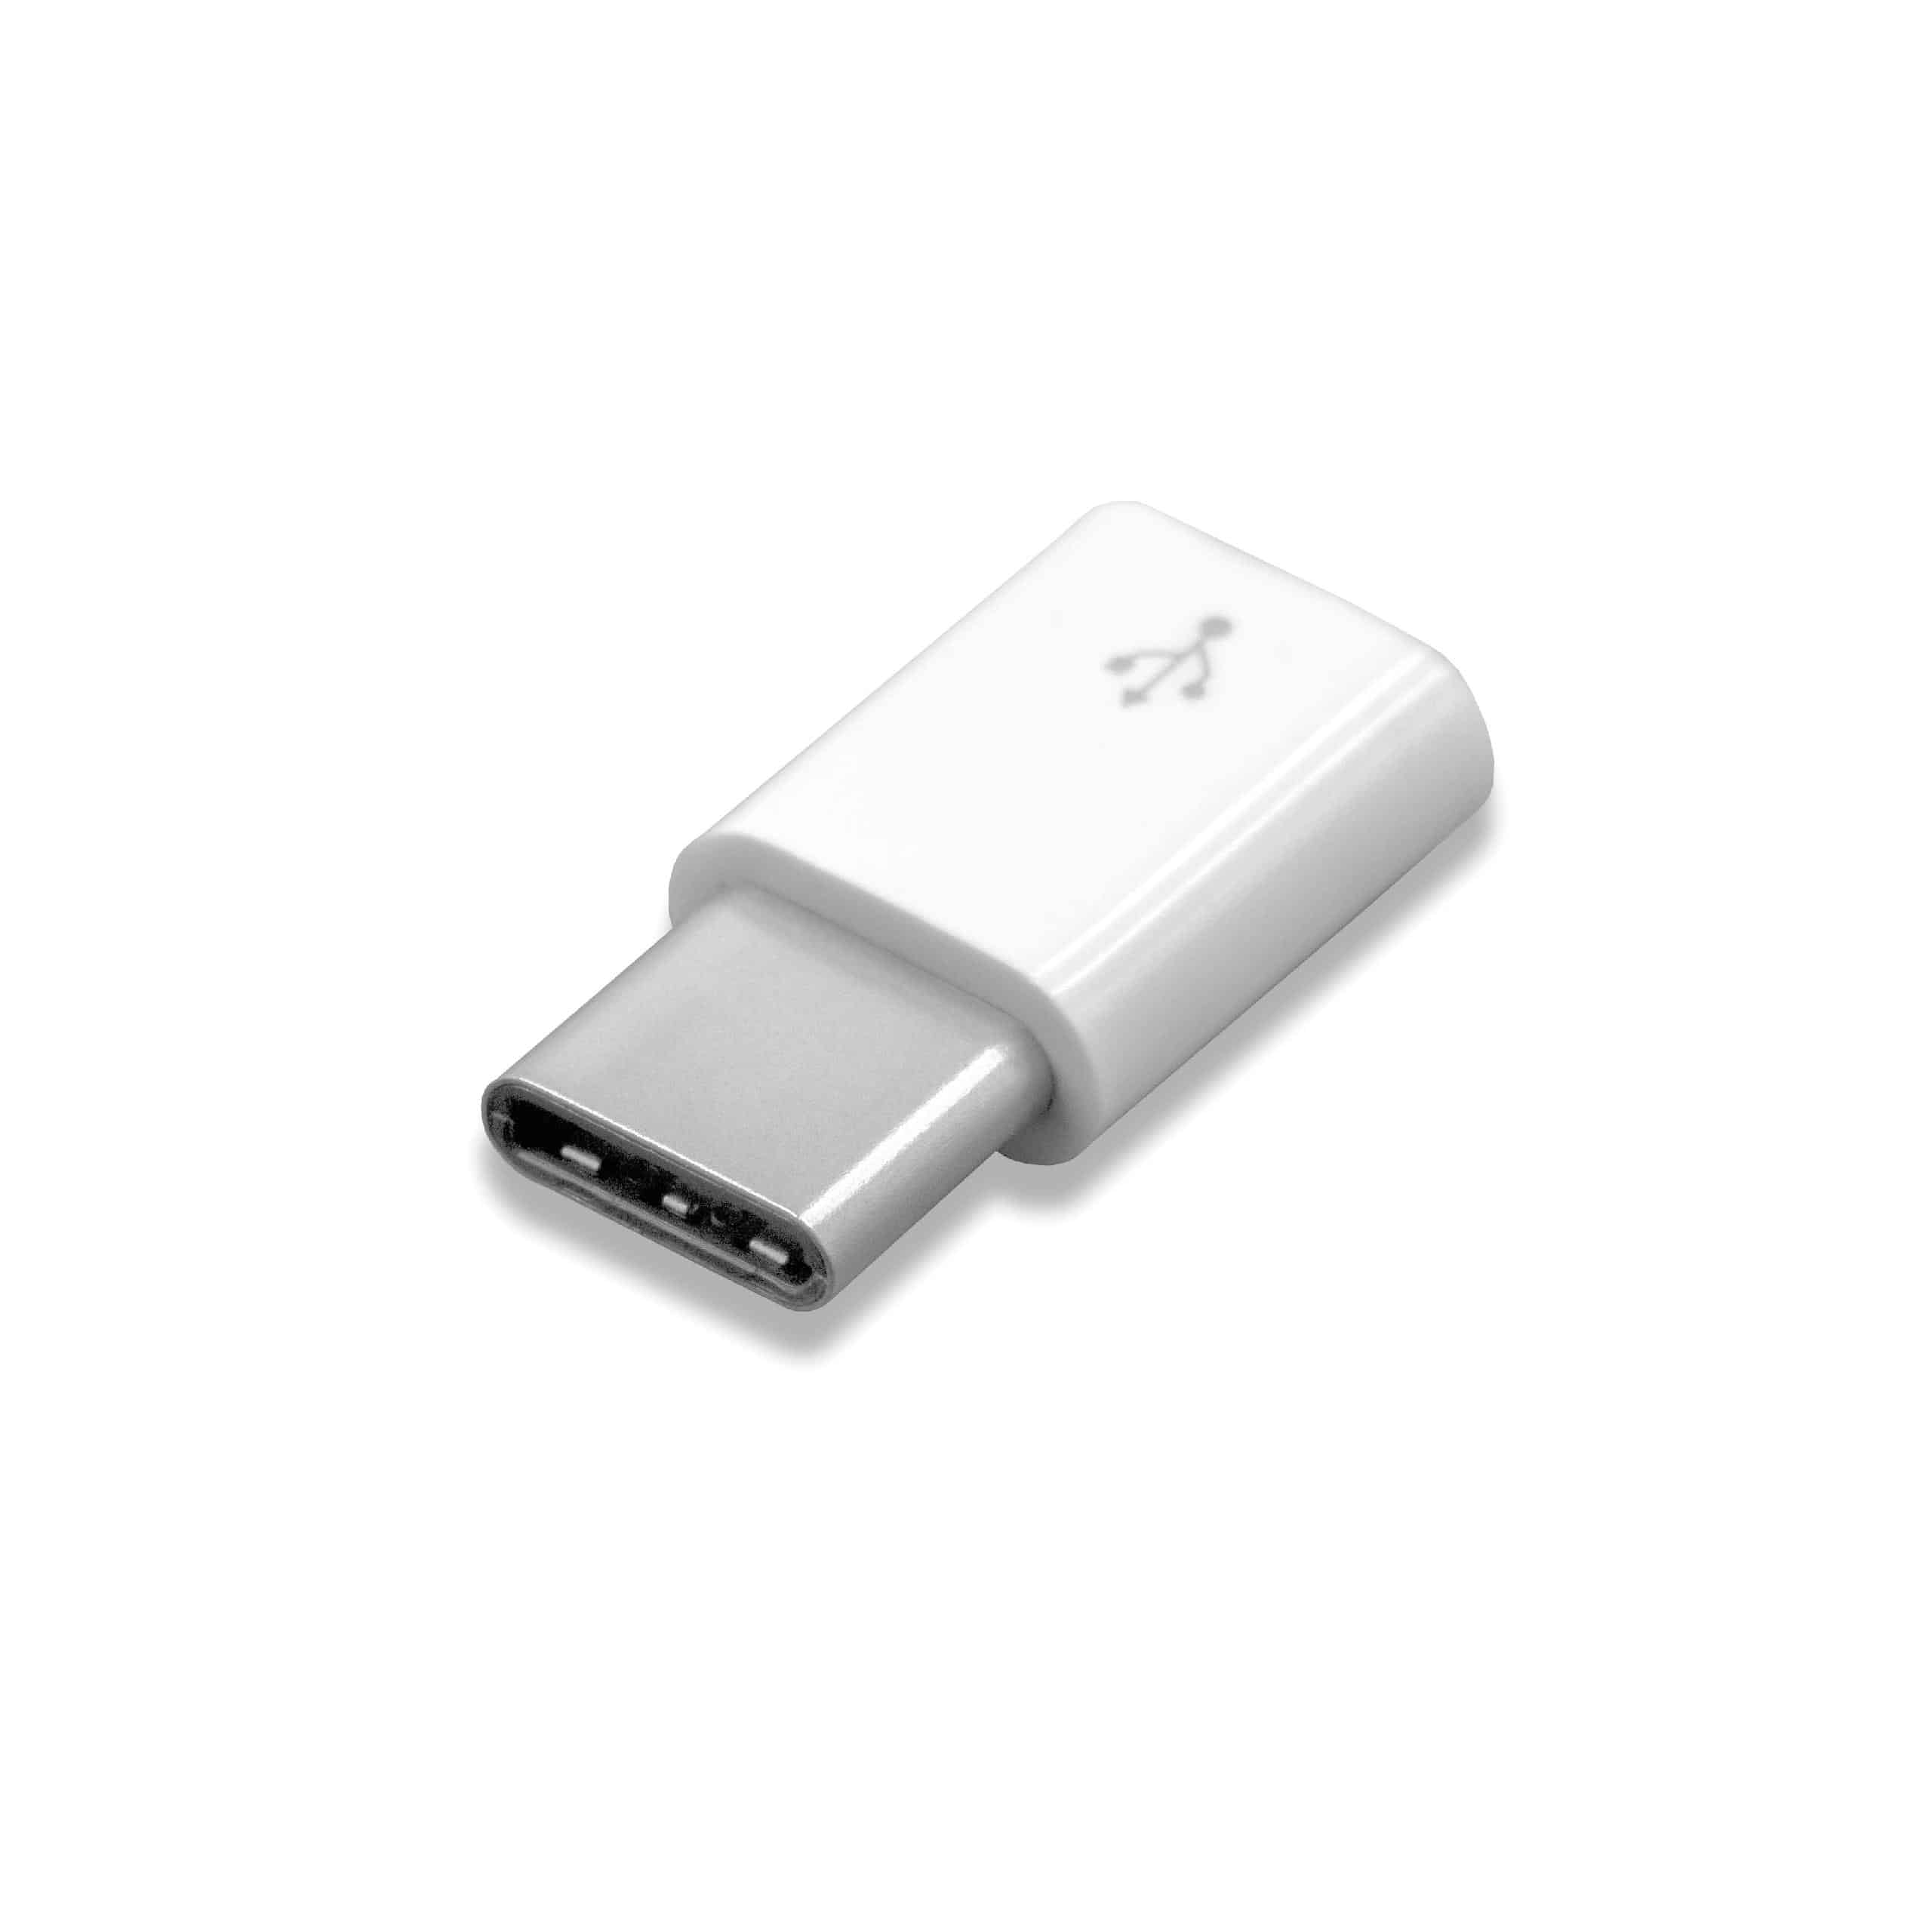 Adapteur OTG USB Type C (mâle) à Micro USB (femelle) pour smartphone, tablette, ordinateur portable